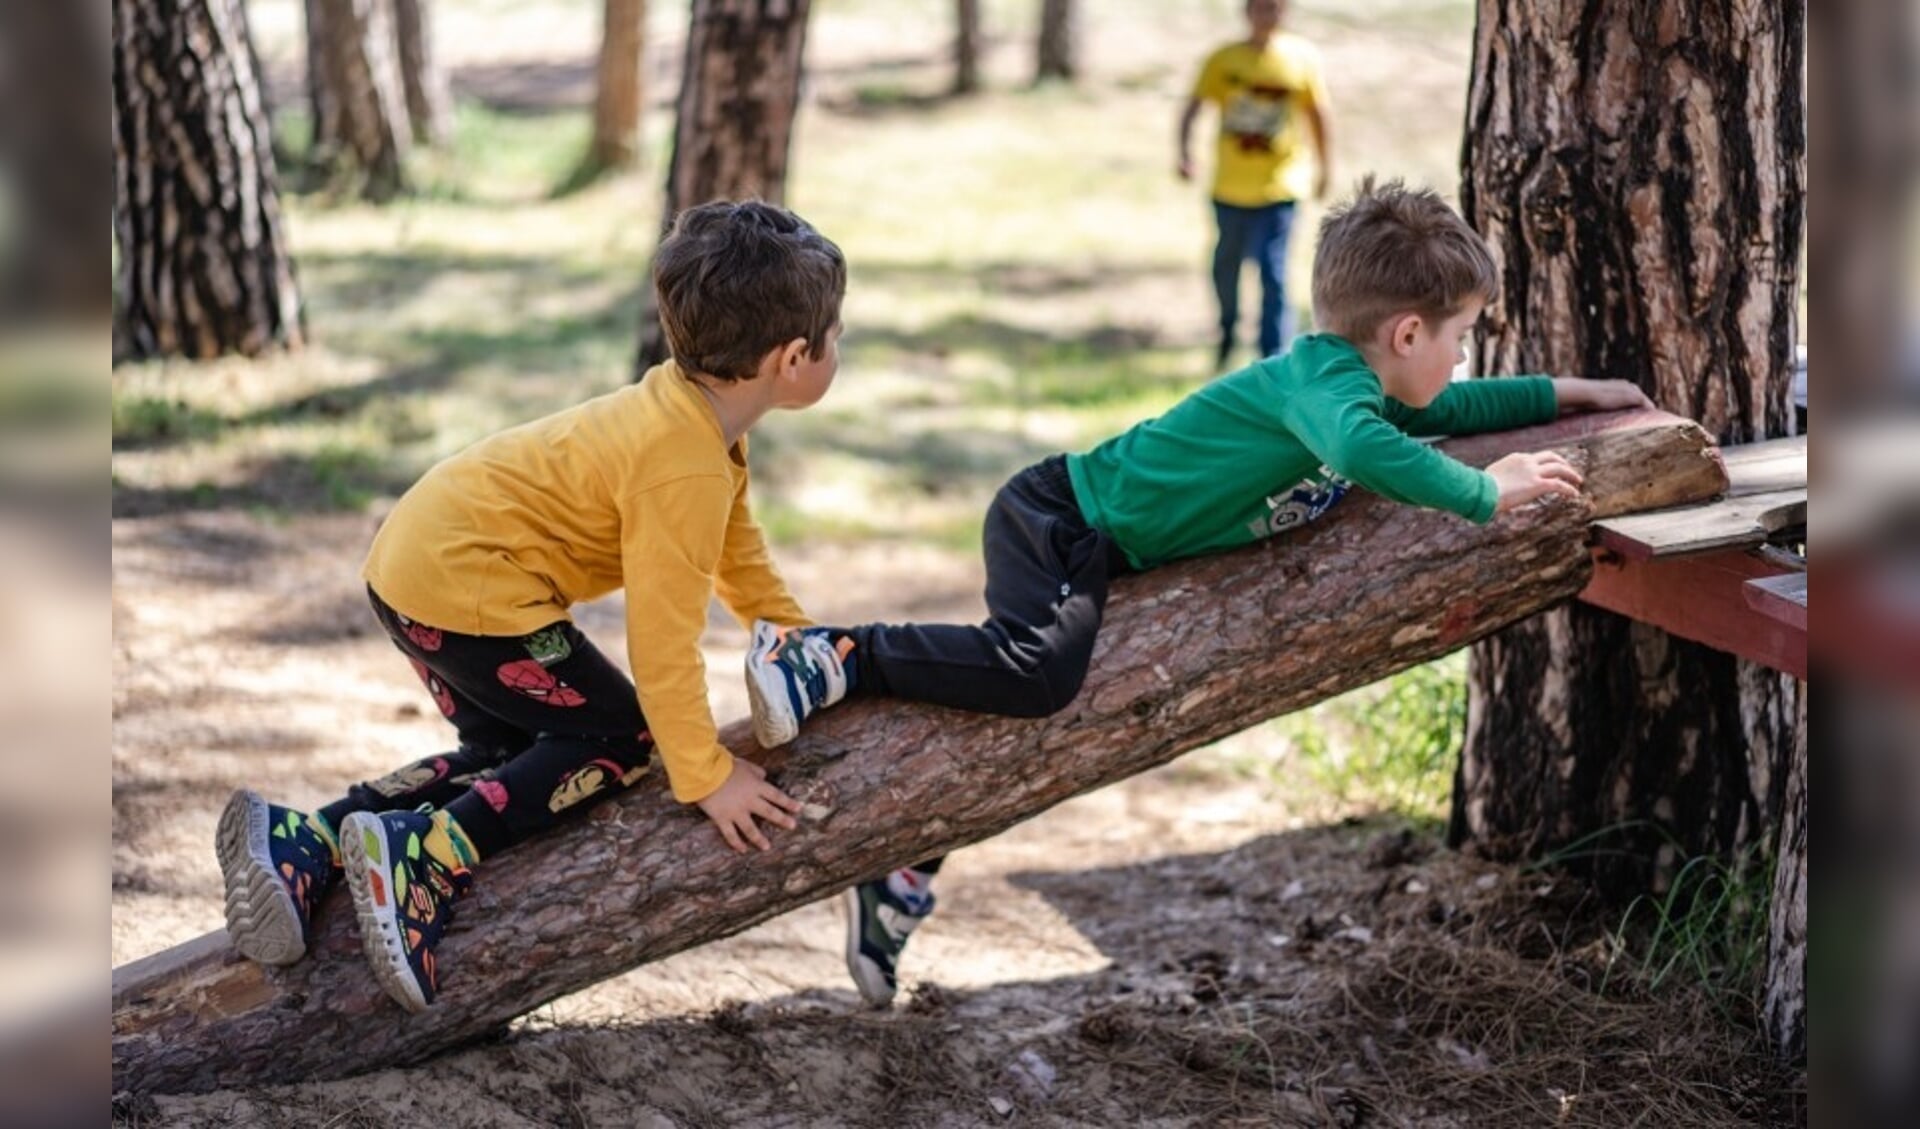 Europa Kinderhulp zoekt vakantieouders om voor circa twee weken een kwetsbaar kind een fijne vakantie te bezorgen. Foto: Europa Kinderhulp